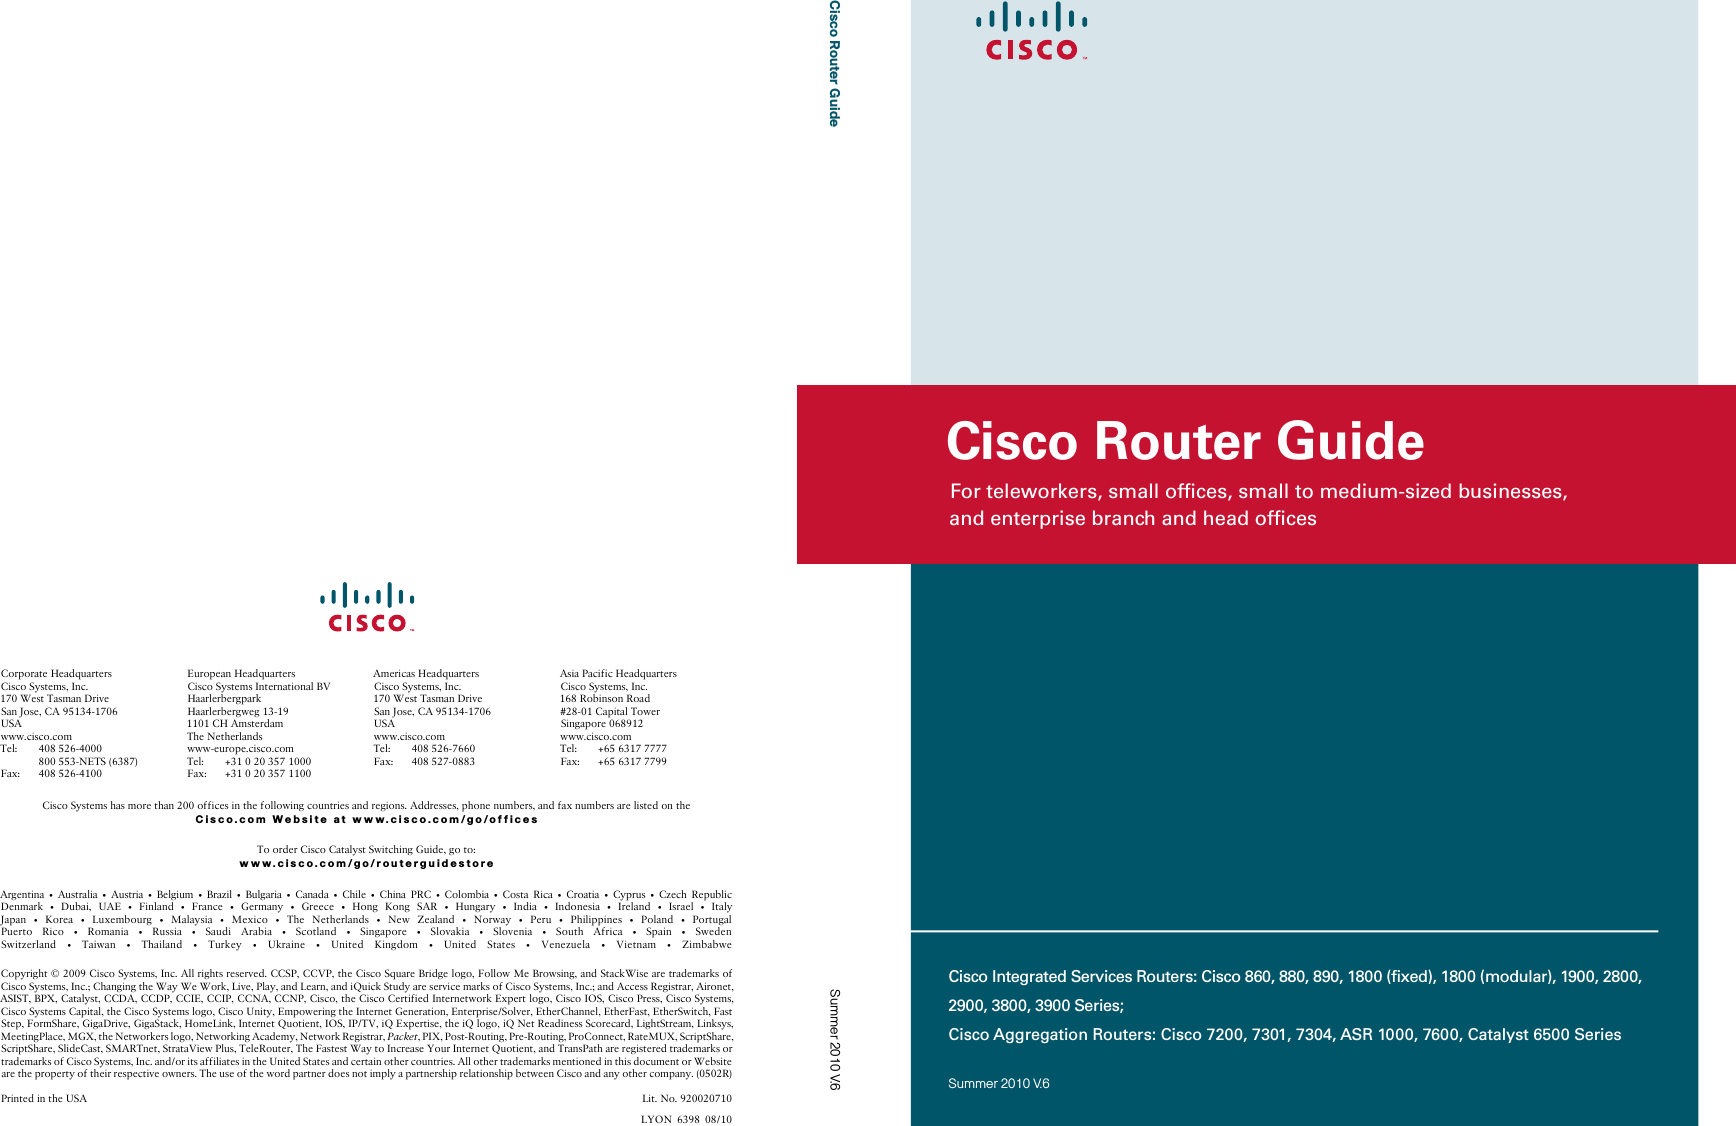 For teleworkers, small ofﬁces, small to medium-sized businesses,  and enterprise branch and head ofﬁcesCisco Router GuideSummer 2010 V.6Cisco Router GuideCisco Integrated Services Routers: Cisco 860, 880, 890, 1800 (ﬁxed), 1800 (modular), 1900, 2800, 2900, 3800, 3900 Series;Cisco Aggregation Routers: Cisco 7200, 7301, 7304, ASR 1000, 7600, Catalyst 6500 SeriesSummer 2010 V.6$UJHQWLQD  $XVWUDOLD  $XVWULD  %HOJLXP  %UD]LO  %XOJDULD  &amp;DQDGD  &amp;KLOH  &amp;KLQD 35&amp;  &amp;RORPELD  &amp;RVWD 5LFD  &amp;URDWLD  &amp;\SUXV  &amp;]HFK 5HSXEOLF&apos;HQPDUN  &apos;XEDL 8$(  )LQODQG  )UDQFH  *HUPDQ\  *UHHFH  +RQJ .RQJ 6$5  +XQJDU\  ,QGLD  ,QGRQHVLD  ,UHODQG  ,VUDHO  ,WDO\-DSDQ  .RUHD  /X[HPERXUJ  0DOD\VLD  0H[LFR  7KH 1HWKHUODQGV  1HZ =HDODQG  1RUZD\  3HUX  3KLOLSSLQHV  3RODQG  3RUWXJDO3XHUWR 5LFR  5RPDQLD  5XVVLD  6DXGL $UDELD  6FRWODQG  6LQJDSRUH  6ORYDNLD  6ORYHQLD  6RXWK $IULFD  6SDLQ  6ZHGHQ6ZLW]HUODQG  7DLZDQ  7KDLODQG  7XUNH\  8NUDLQH  8QLWHG .LQJGRP  8QLWHG 6WDWHV  9HQH]XHOD  9LHWQDP  =LPEDEZH&amp;RS\ULJKW&amp;LVFR6\VWHPV,QF$OOULJKWVUHVHUYHG&amp;&amp;63&amp;&amp;93WKH&amp;LVFR6TXDUH%ULGJHORJR)ROORZ0H%URZVLQJDQG6WDFN:LVHDUHWUDGHPDUNVRI&amp;LVFR6\VWHPV,QF&amp;KDQJLQJWKH:D\:H:RUN/LYH3OD\DQG/HDUQDQGL4XLFN6WXG\DUHVHUYLFHPDUNVRI&amp;LVFR6\VWHPV,QFDQG$FFHVV5HJLVWUDU$LURQHW$6,67%3;&amp;DWDO\VW&amp;&amp;&apos;$&amp;&amp;&apos;3&amp;&amp;,(&amp;&amp;,3&amp;&amp;1$&amp;&amp;13&amp;LVFRWKH&amp;LVFR&amp;HUWLILHG,QWHUQHWZRUN([SHUWORJR&amp;LVFR,26&amp;LVFR3UHVV&amp;LVFR6\VWHPV&amp;LVFR6\VWHPV&amp;DSLWDOWKH&amp;LVFR6\VWHPVORJR&amp;LVFR8QLW\(PSRZHULQJWKH,QWHUQHW*HQHUDWLRQ(QWHUSULVH6ROYHU(WKHU&amp;KDQQHO(WKHU)DVW(WKHU6ZLWFK)DVW6WHS)RUP6KDUH*LJD&apos;ULYH*LJD6WDFN+RPH/LQN,QWHUQHW4XRWLHQW,26,379L4([SHUWLVHWKHL4ORJRL41HW5HDGLQHVV6FRUHFDUG/LJKW6WUHDP/LQNV\V0HHWLQJ3ODFH0*;WKH1HWZRUNHUVORJR1HWZRUNLQJ$FDGHP\1HWZRUN5HJLVWUDU3DFNHW3,;3RVW5RXWLQJ3UH5RXWLQJ3UR&amp;RQQHFW5DWH08;6FULSW6KDUH6FULSW6KDUH6OLGH&amp;DVW60$57QHW6WUDWD9LHZ3OXV7HOH5RXWHU7KH)DVWHVW:D\WR,QFUHDVH&lt;RXU,QWHUQHW4XRWLHQWDQG7UDQV3DWKDUHUHJLVWHUHGWUDGHPDUNVRUWUDGHPDUNVRI&amp;LVFR6\VWHPV,QFDQGRULWVDIILOLDWHVLQWKH8QLWHG6WDWHVDQGFHUWDLQRWKHUFRXQWULHV$OORWKHUWUDGHPDUNVPHQWLRQHGLQWKLVGRFXPHQWRU:HEVLWHDUHWKHSURSHUW\RIWKHLUUHVSHFWLYHRZQHUV7KHXVHRIWKHZRUGSDUWQHUGRHVQRWLPSO\DSDUWQHUVKLSUHODWLRQVKLSEHWZHHQ&amp;LVFRDQGDQ\RWKHUFRPSDQ\53ULQWHGLQWKH86$ /LW1R/&lt;21&amp;RUSRUDWH+HDGTXDUWHUV&amp;LVFR6\VWHPV,QF:HVW7DVPDQ&apos;ULYH6DQ-RVH&amp;$86$ZZZFLVFRFRP7HO  1(76)D[ (XURSHDQ+HDGTXDUWHUV&amp;LVFR6\VWHPV,QWHUQDWLRQDO%9+DDUOHUEHUJSDUN+DDUOHUEHUJZHJ&amp;+$PVWHUGDP7KH1HWKHUODQGVZZZHXURSHFLVFRFRP7HO )D[ $PHULFDV+HDGTXDUWHUV&amp;LVFR6\VWHPV,QF:HVW7DVPDQ&apos;ULYH6DQ-RVH&amp;$86$ZZZFLVFRFRP7HO )D[ $VLD3DFLILF+HDGTXDUWHUV&amp;LVFR6\VWHPV,QF5RELQVRQ5RDG&amp;DSLWDO7RZHU6LQJDSRUHZZZFLVFRFRP7HO )D[ &amp;LVFR6\VWHPVKDVPRUHWKDQRIILFHVLQWKHIROORZLQJFRXQWULHVDQGUHJLRQV$GGUHVVHVSKRQHQXPEHUVDQGID[QXPEHUVDUHOLVWHGRQWKHCisco.com Website at www.cisco.com/go/offices7RRUGHU&amp;LVFR&amp;DWDO\VW6ZLWFKLQJ*XLGHJRWRwww.cisco.com/go/routerguidestore